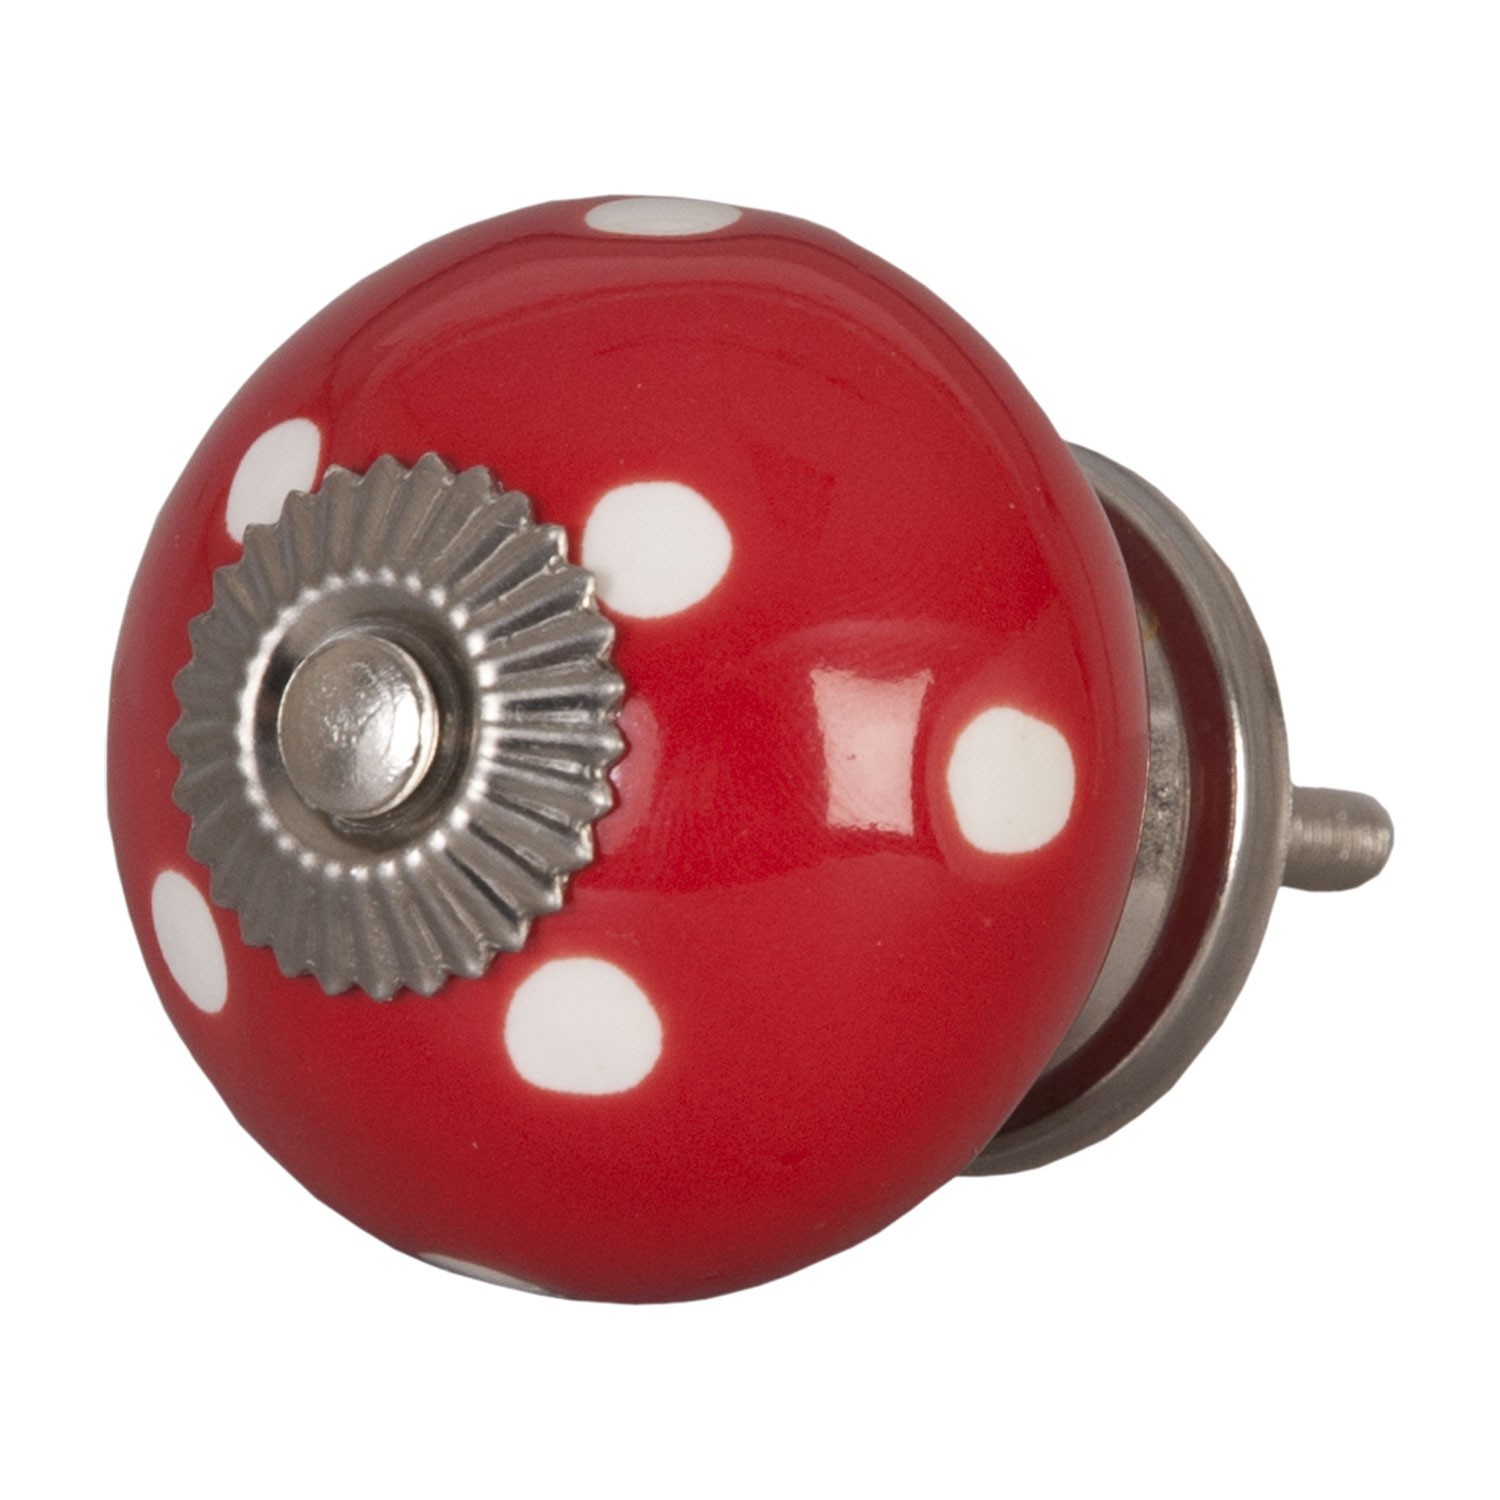 Červená keramicka úchytka s puntíky -  Ø 4 cm Clayre & Eef